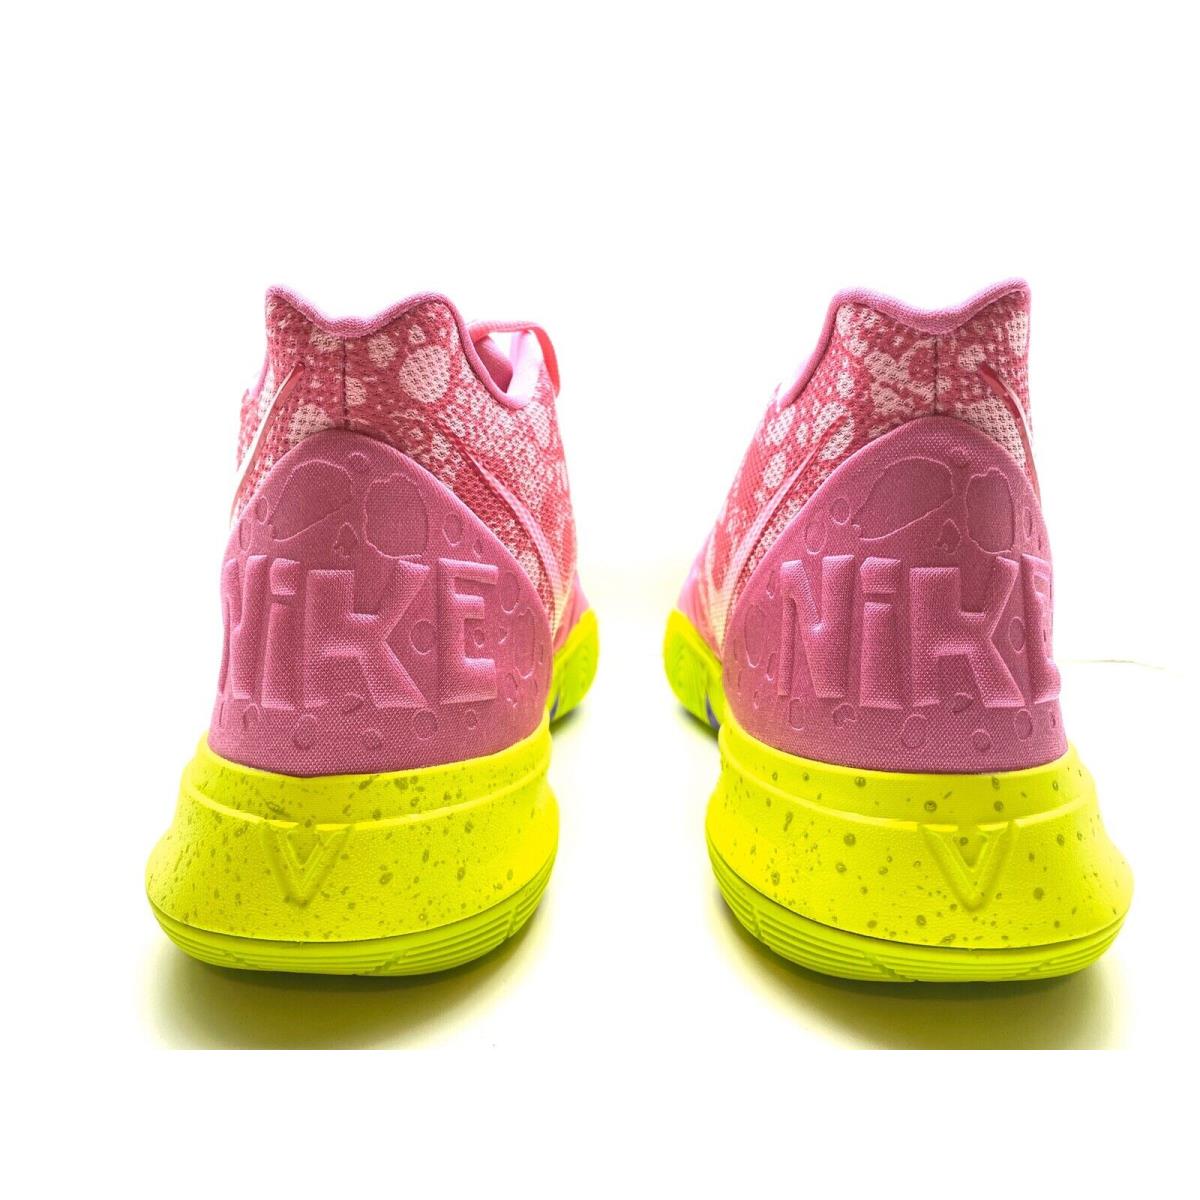 Nike Kyrie 5 Sbsp Spongebob Squarepants Patrick Star Lotus CJ6951 600 sz 17 | 883212045218 - Nike shoes Kyrie - | SporTipTop